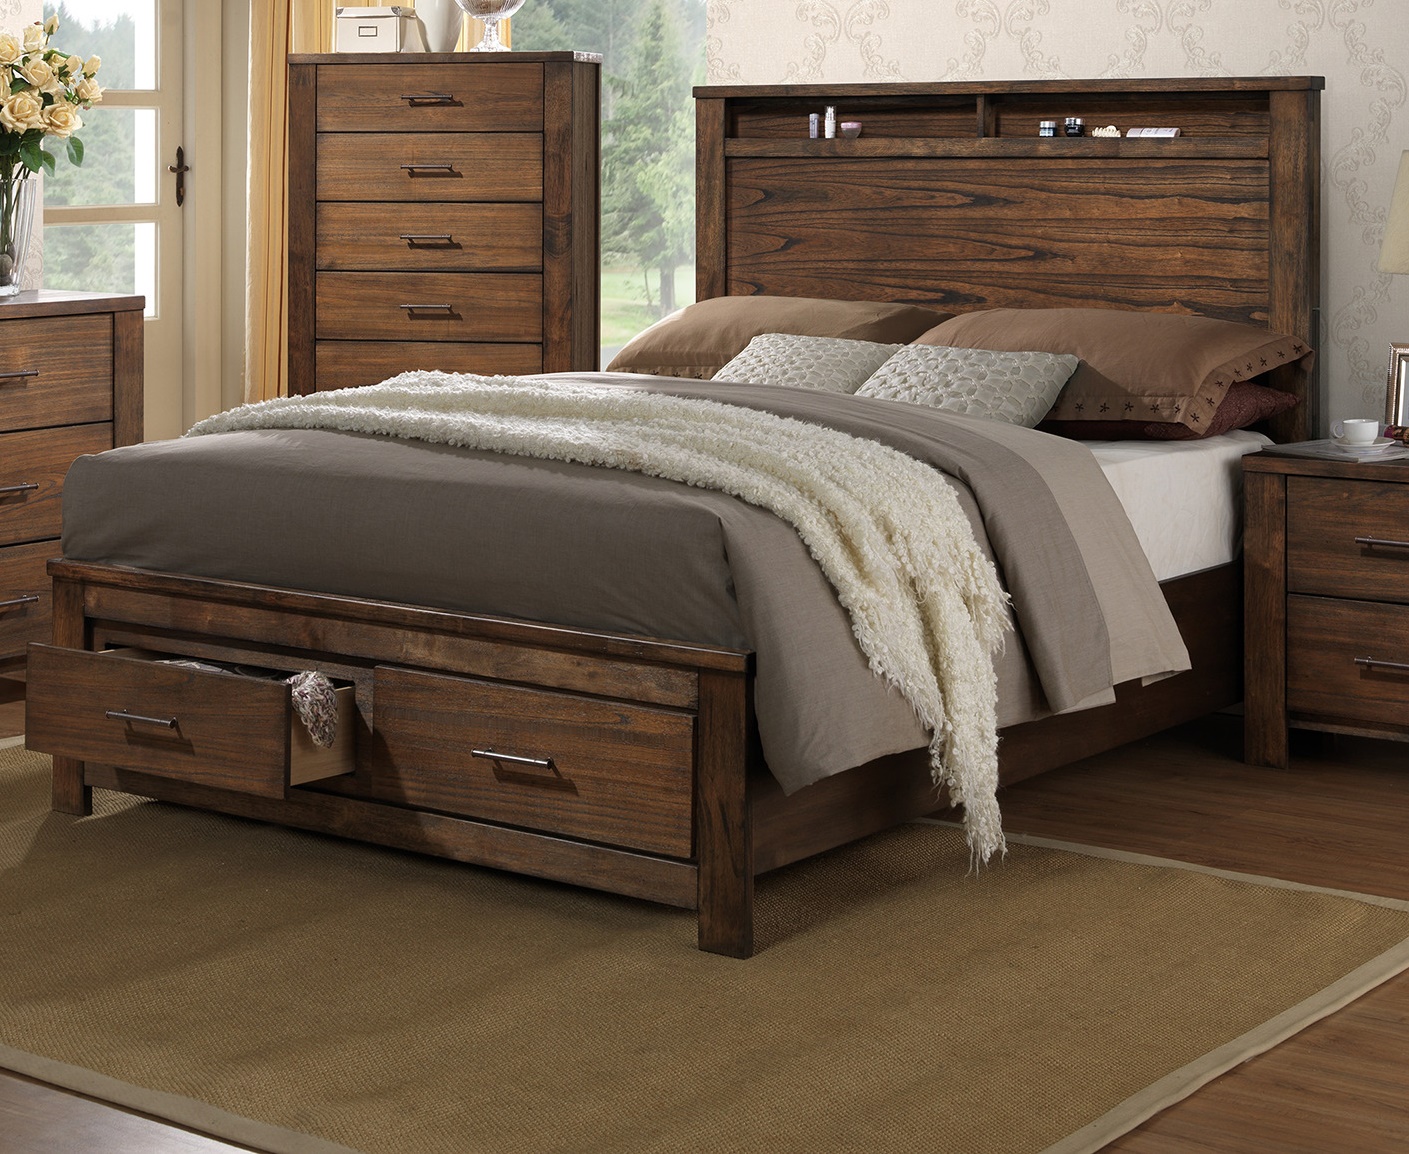 Fb Shelf Hb Bedframe Bedroom Furniture, Cal King Bed Frame With Headboard Storage